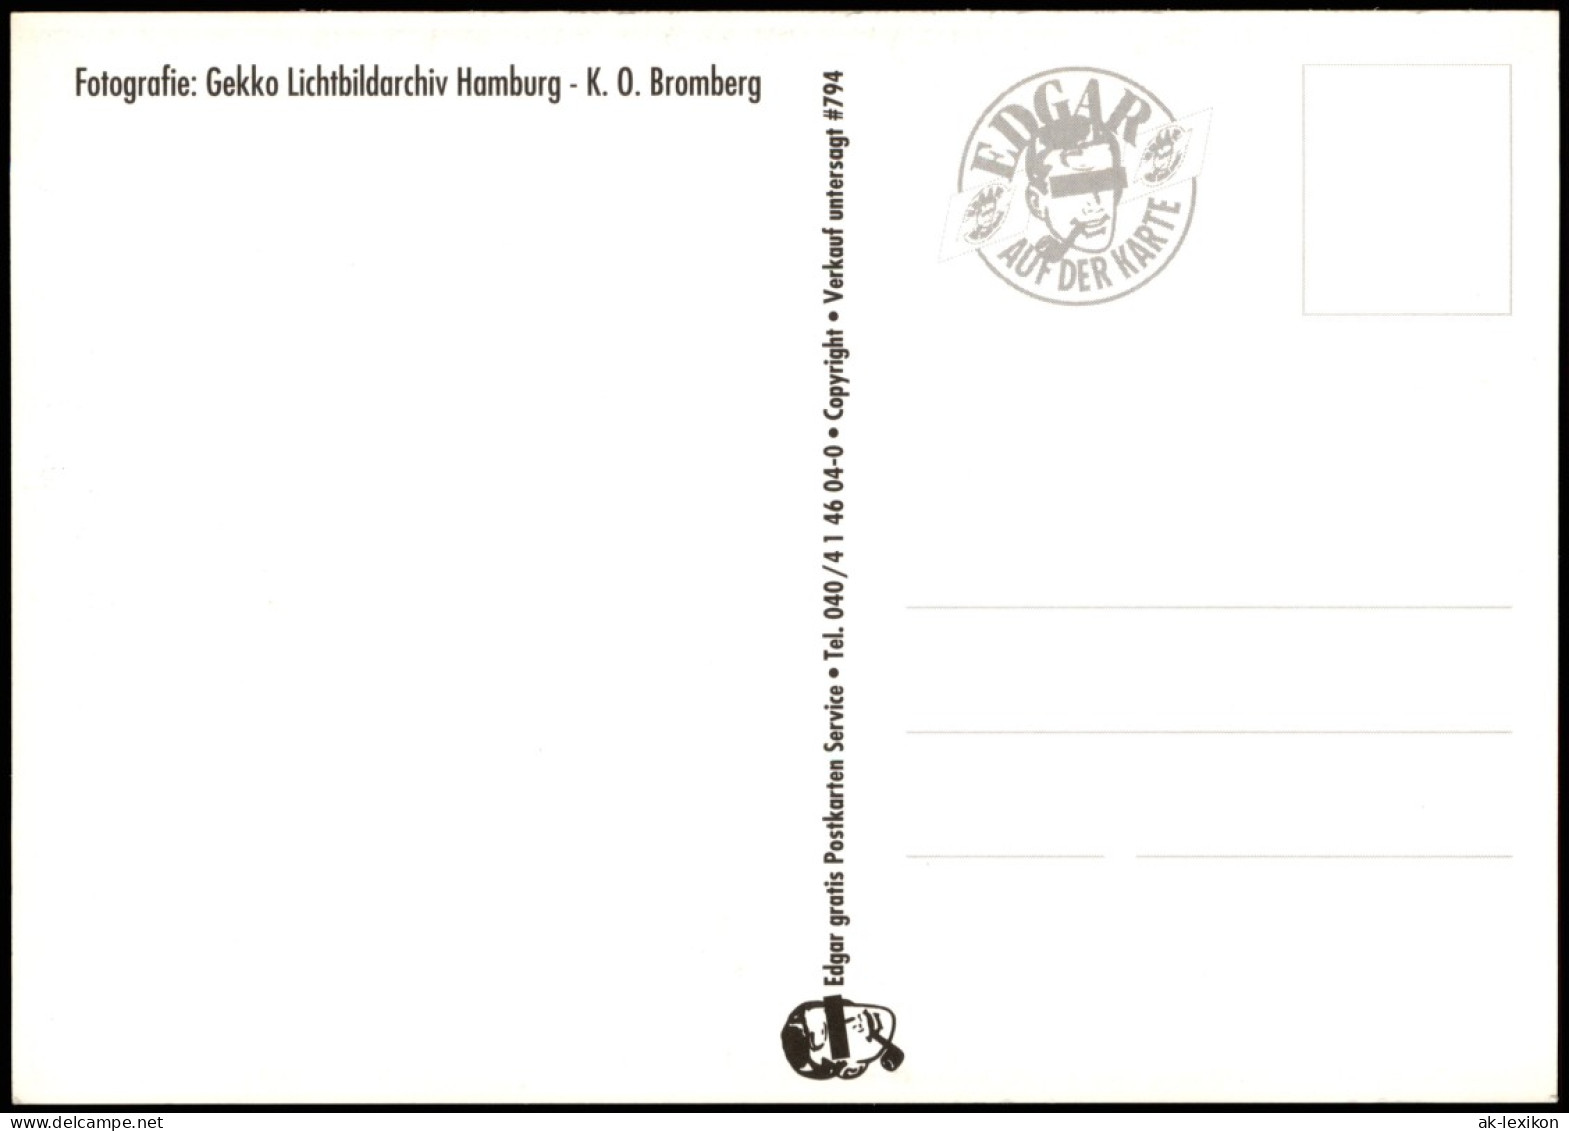 Ansichtskarte  Schach (Chess) Motivkarte Schachspieler Auf Parkbank 2000 - Zeitgenössisch (ab 1950)